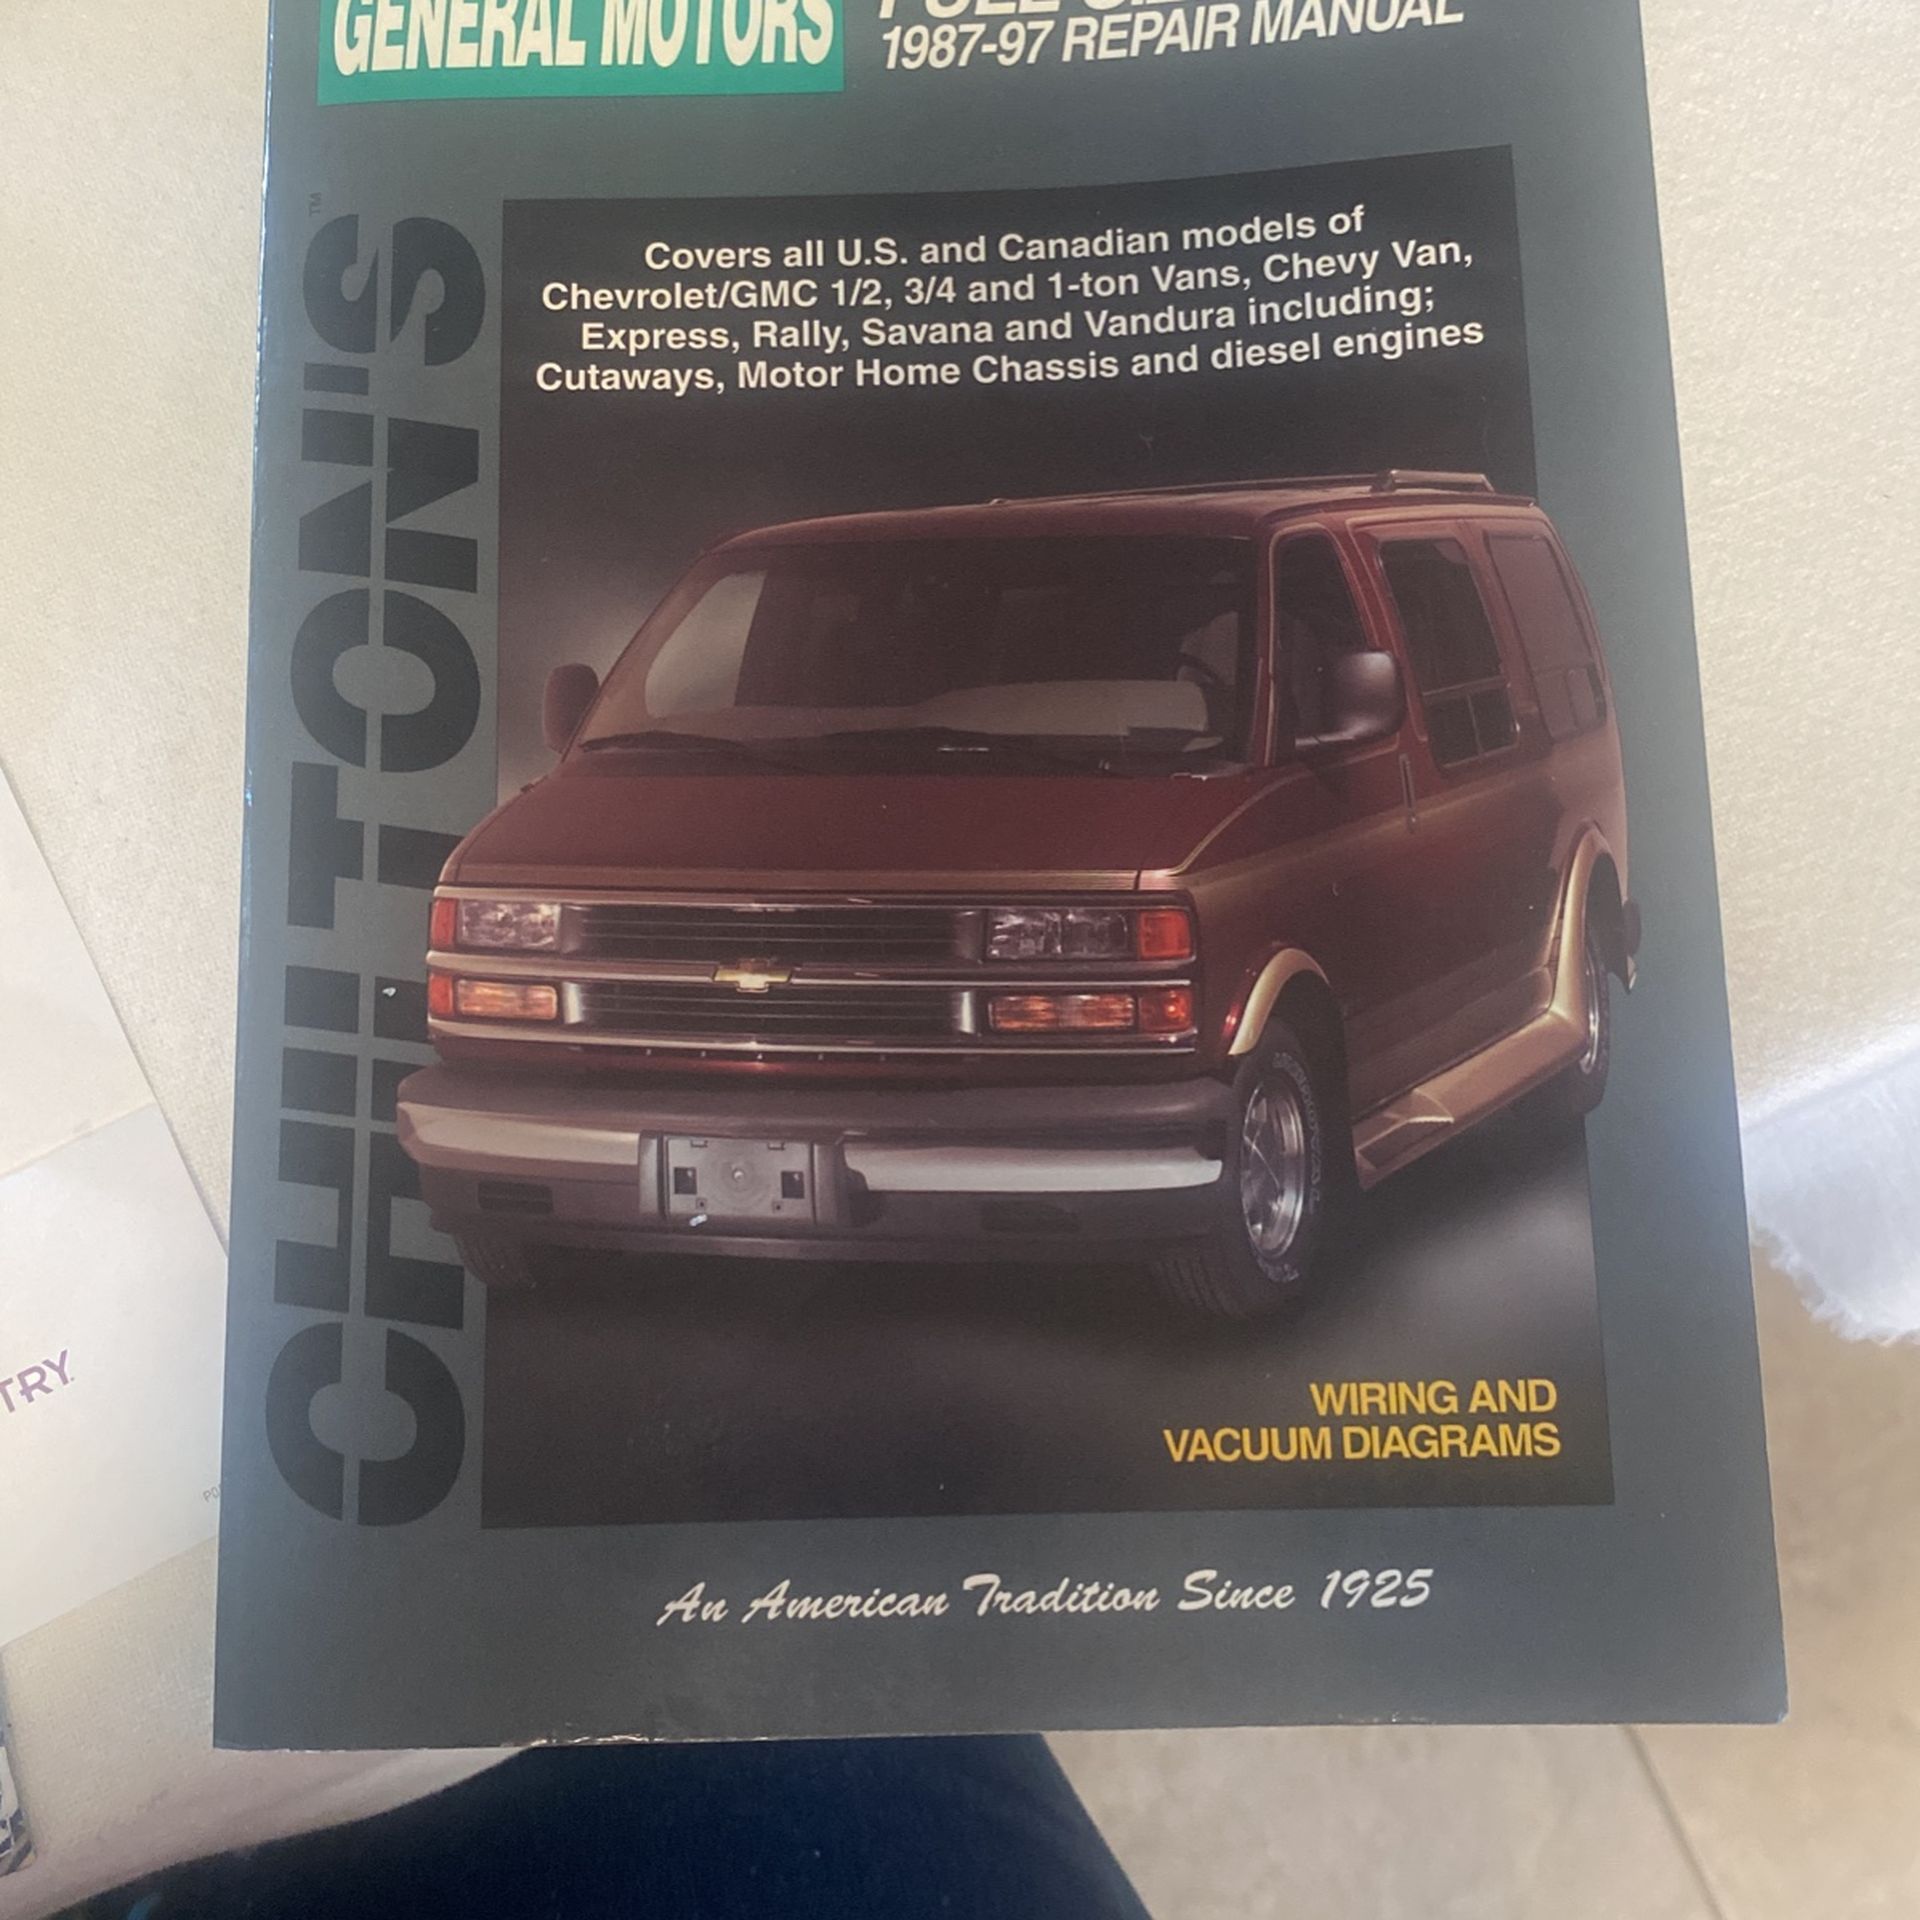 GM Full-Size Van Repair Manual 1987-97